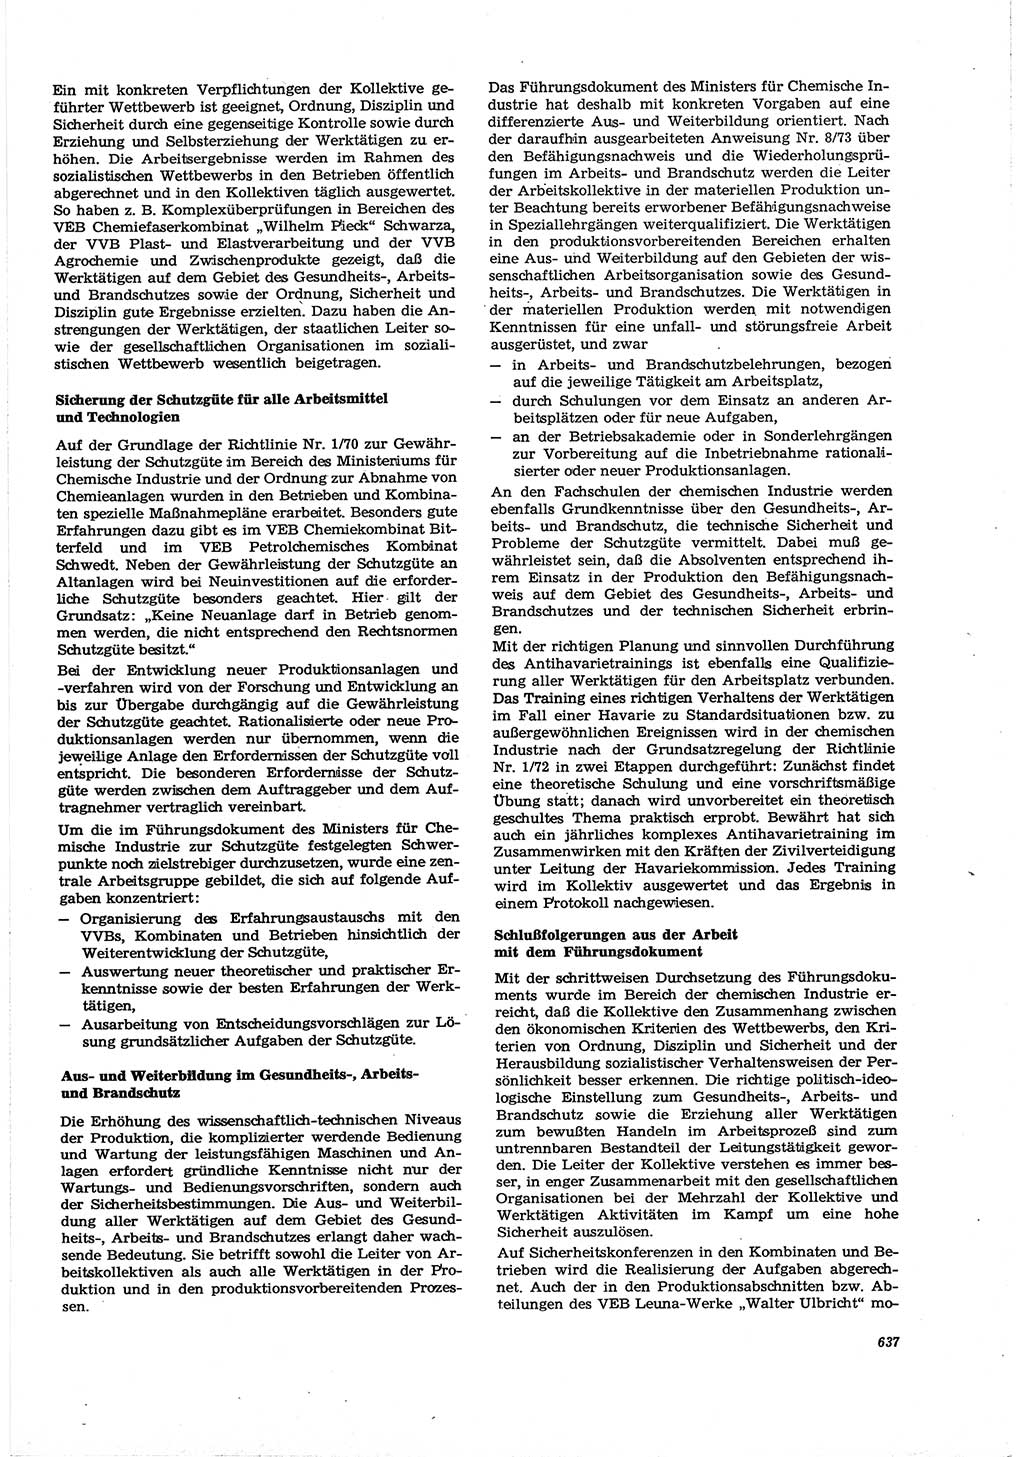 Neue Justiz (NJ), Zeitschrift für Recht und Rechtswissenschaft [Deutsche Demokratische Republik (DDR)], 30. Jahrgang 1976, Seite 637 (NJ DDR 1976, S. 637)